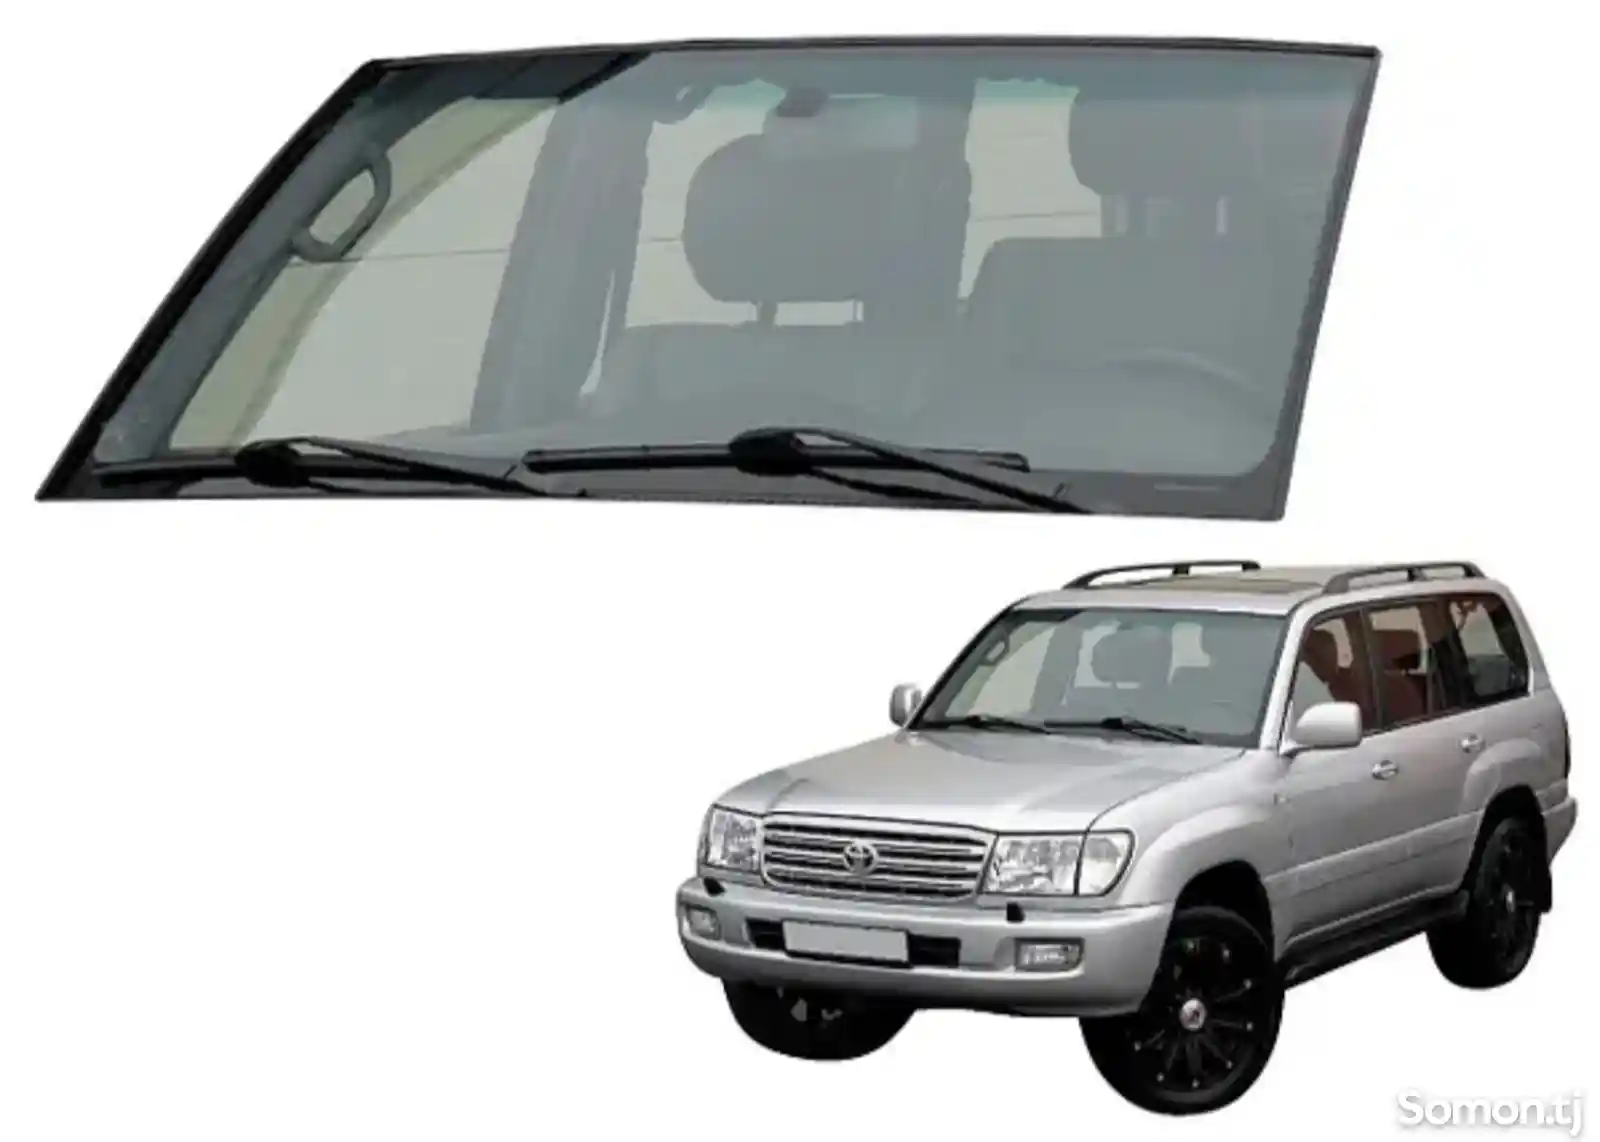 Лобовое стекло на Toyota Land Cruiser 105 2000